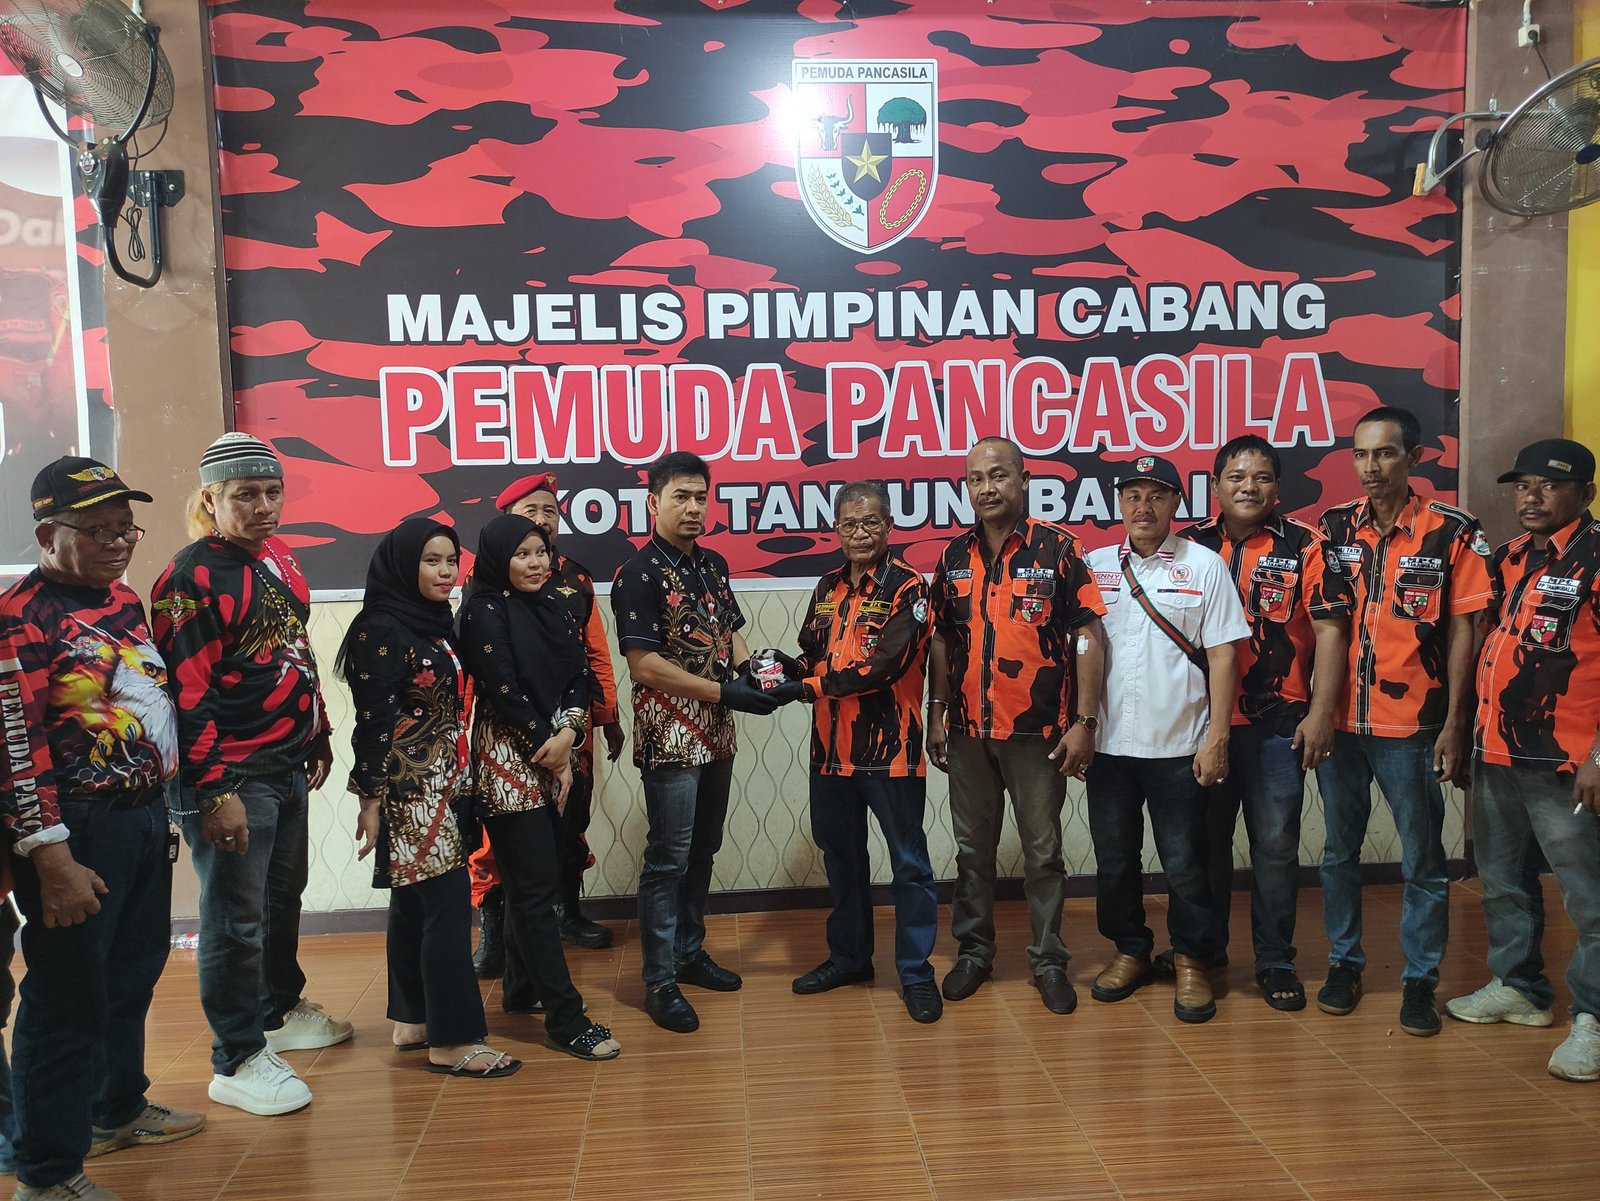 Ketua MPC PP Kota Tanjung Balai HM Kosasih menyerahkan secara simbolis darah kepada petugas PMI kota Tanjung Balai 